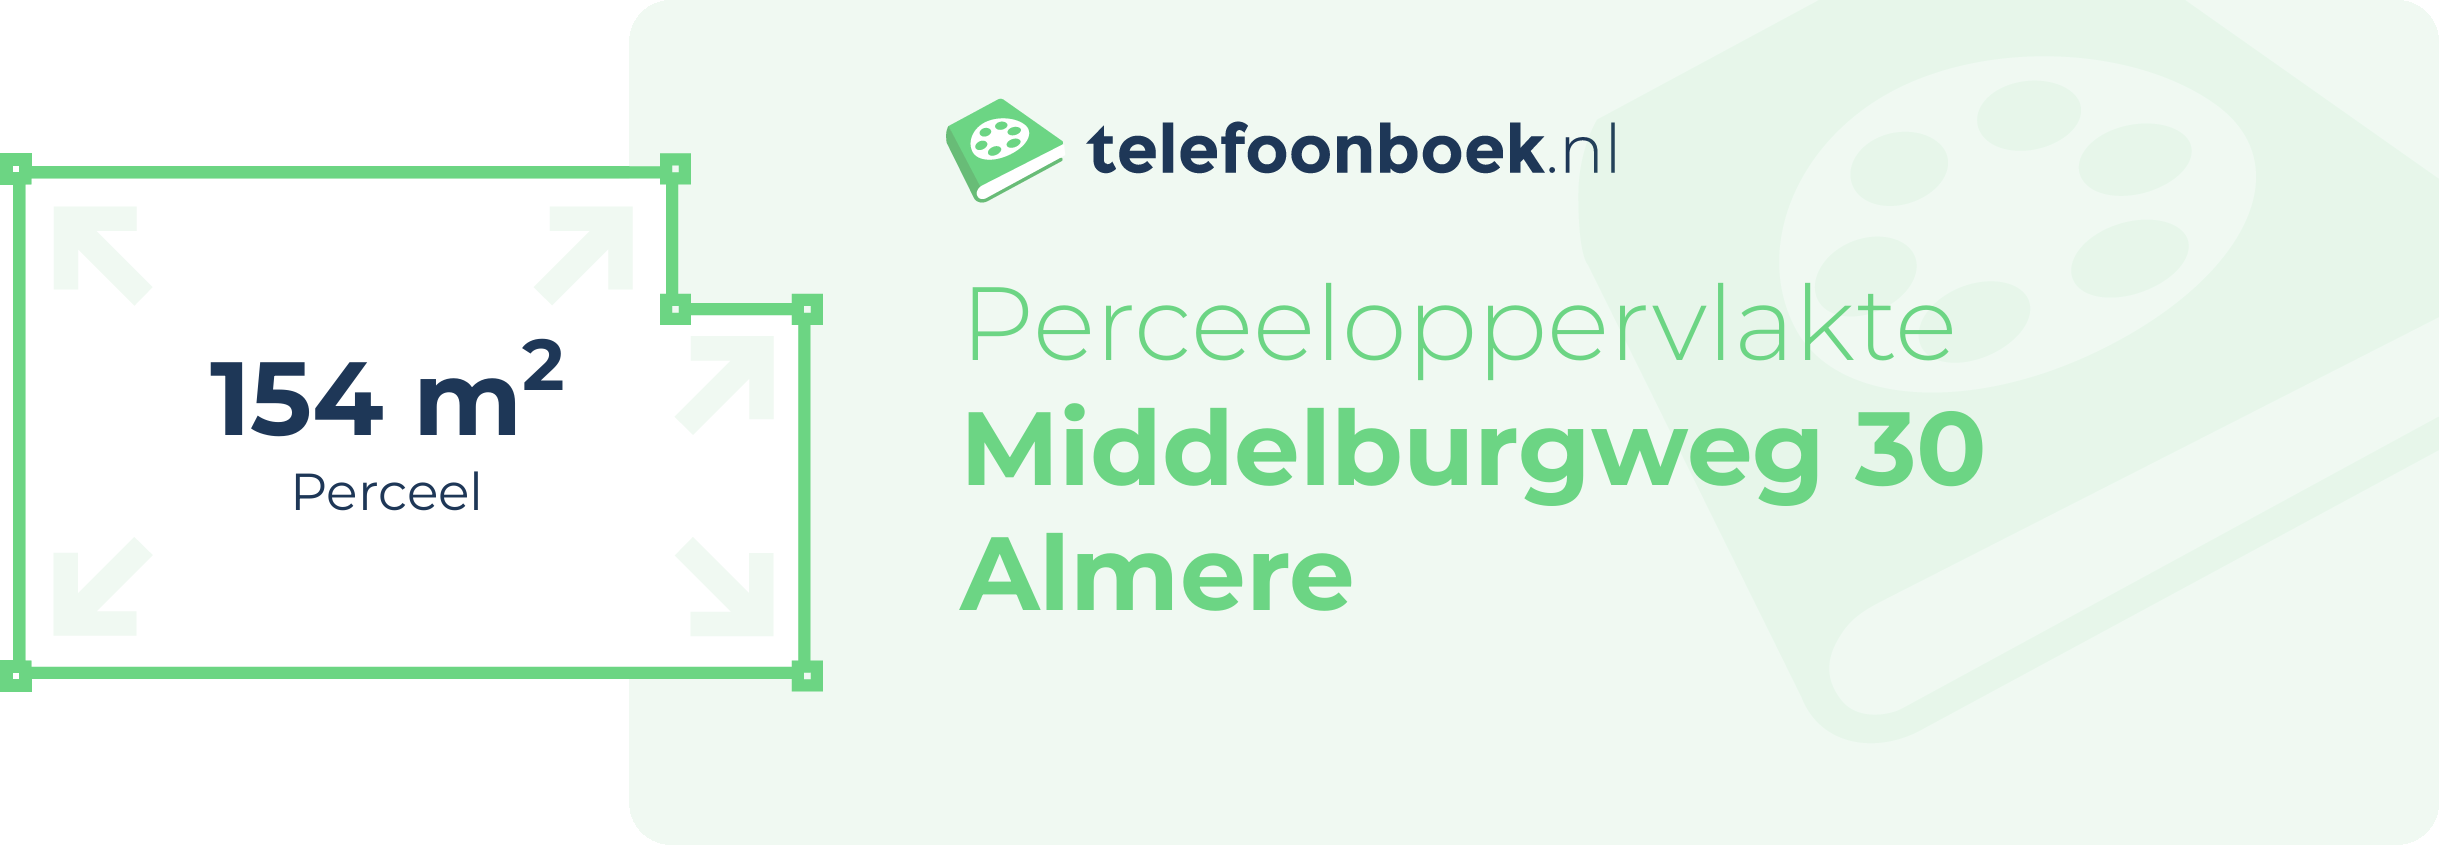 Perceeloppervlakte Middelburgweg 30 Almere